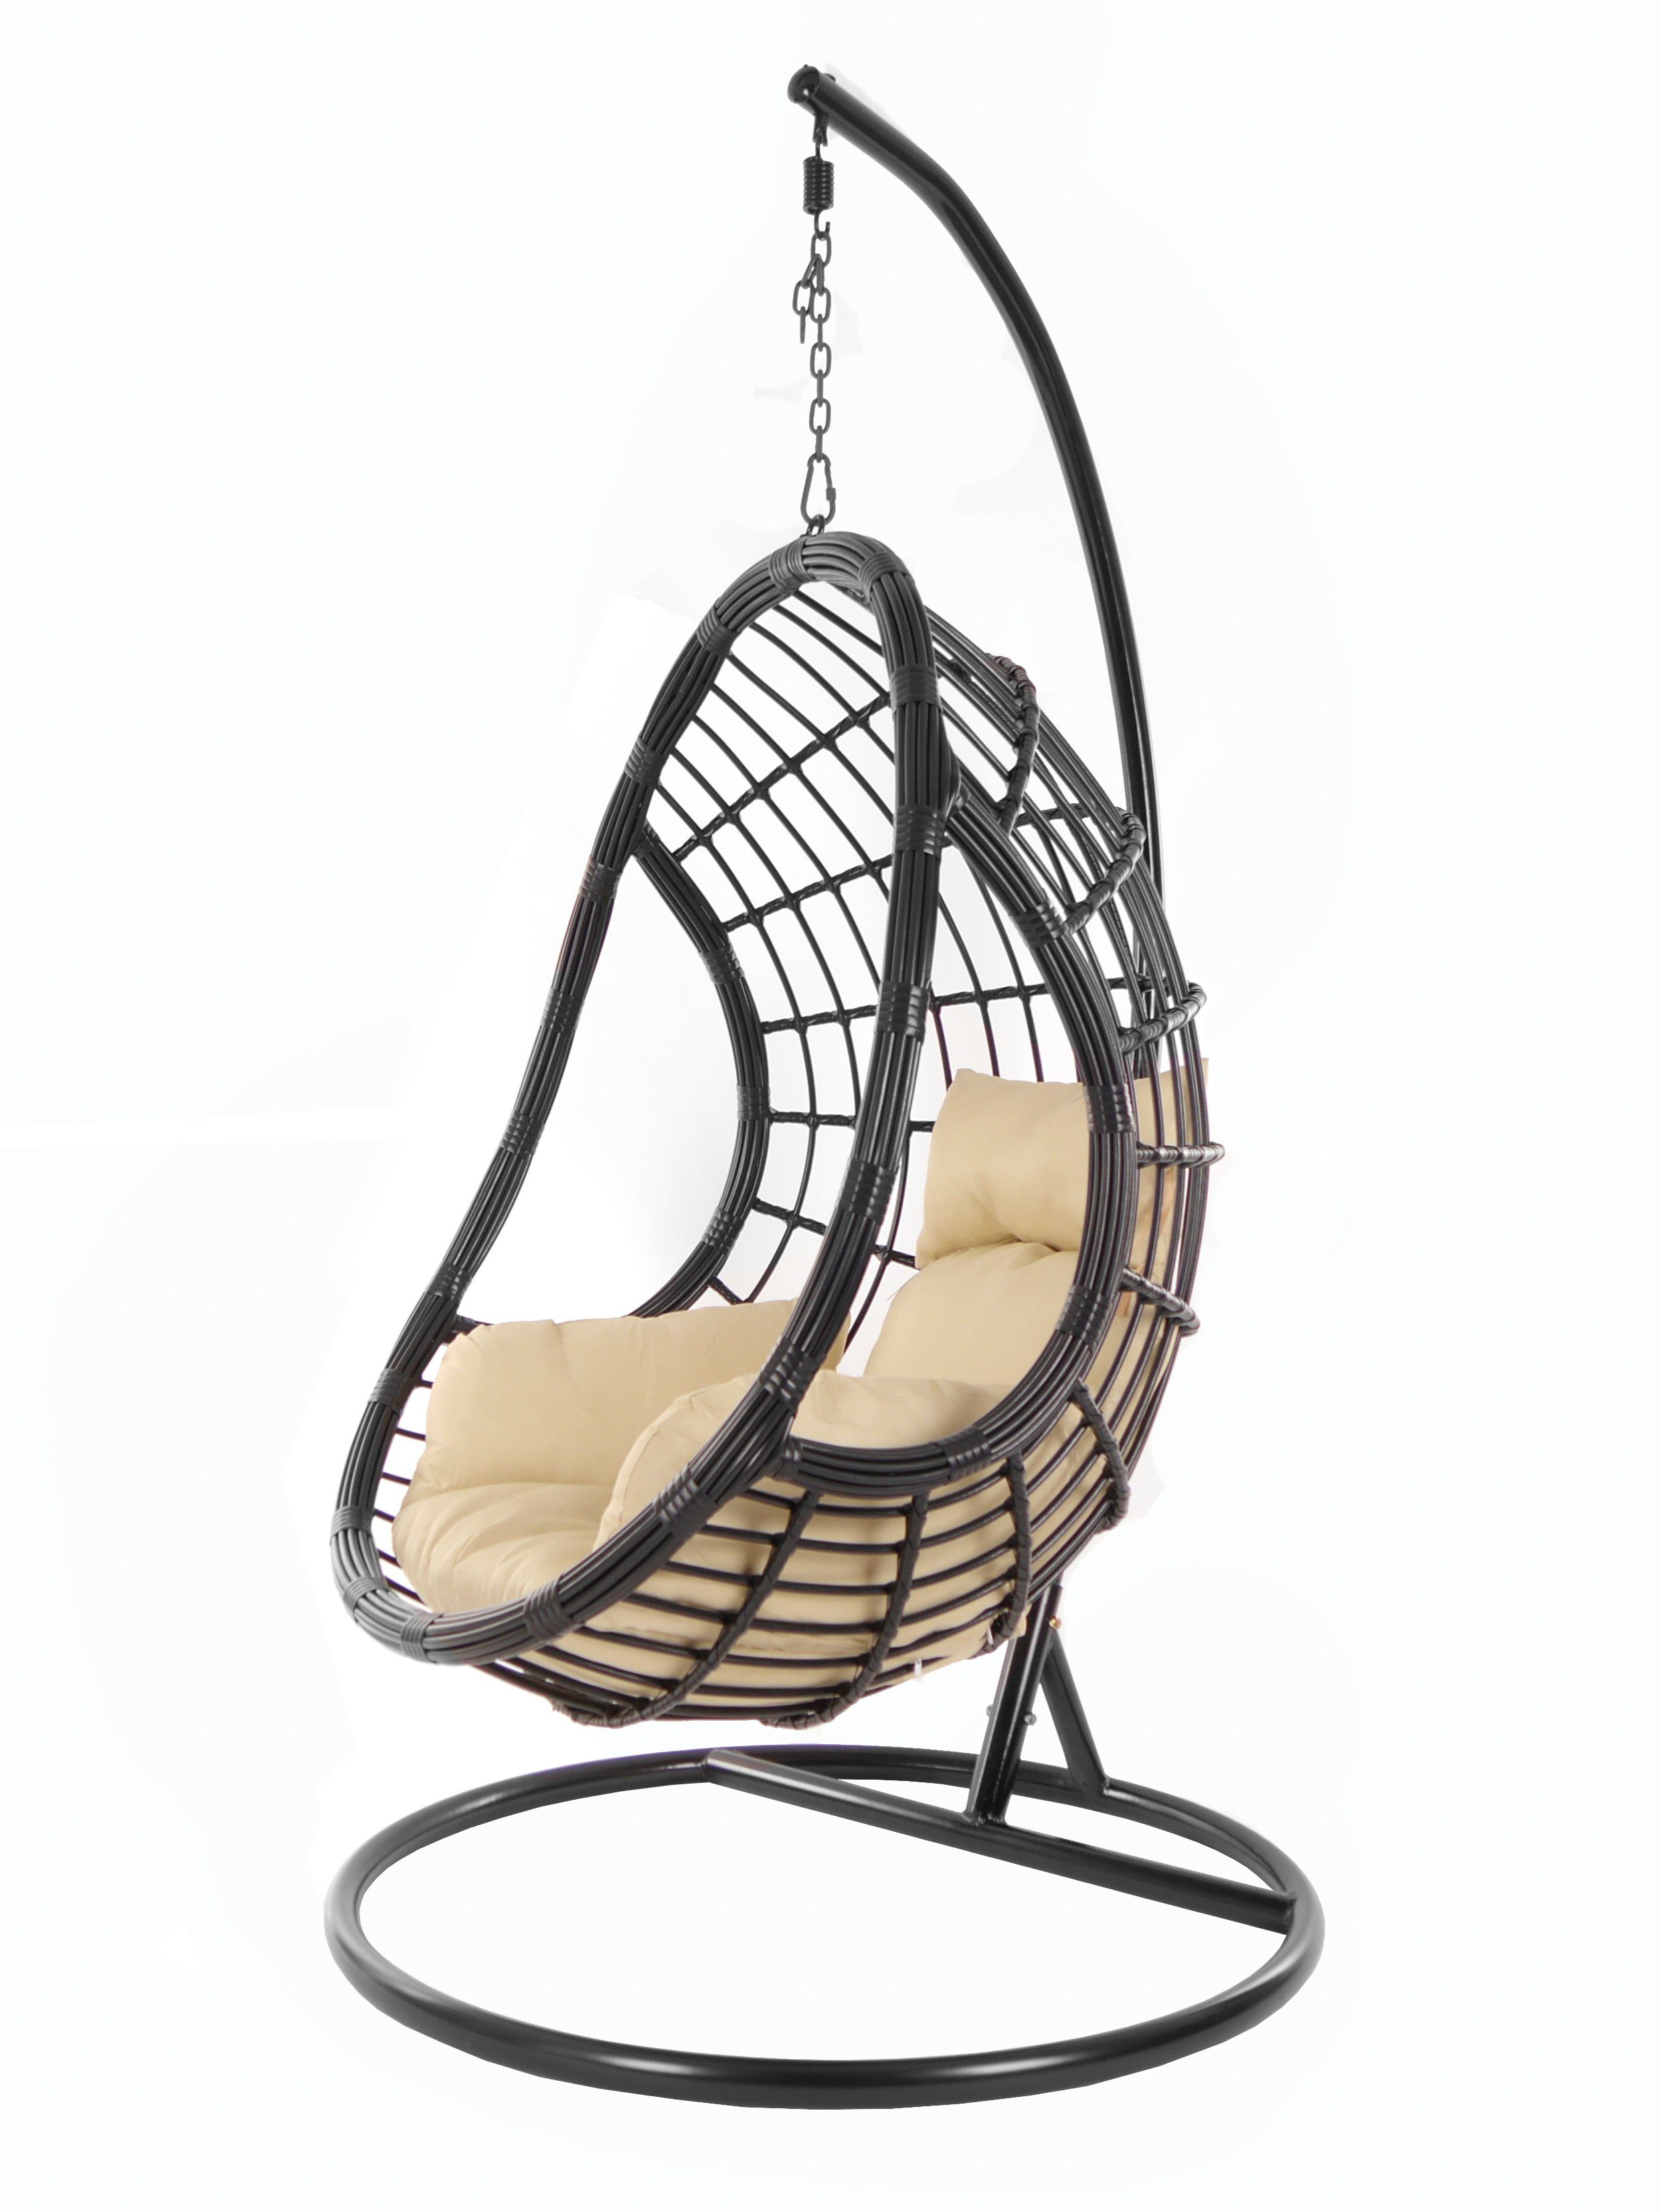 KIDEO Hängesessel PALMANOVA black, Schwebesessel, Swing Chair, Hängesessel mit Gestell und Kissen, Nest-Kissen hellbraun (7007 capucchino)